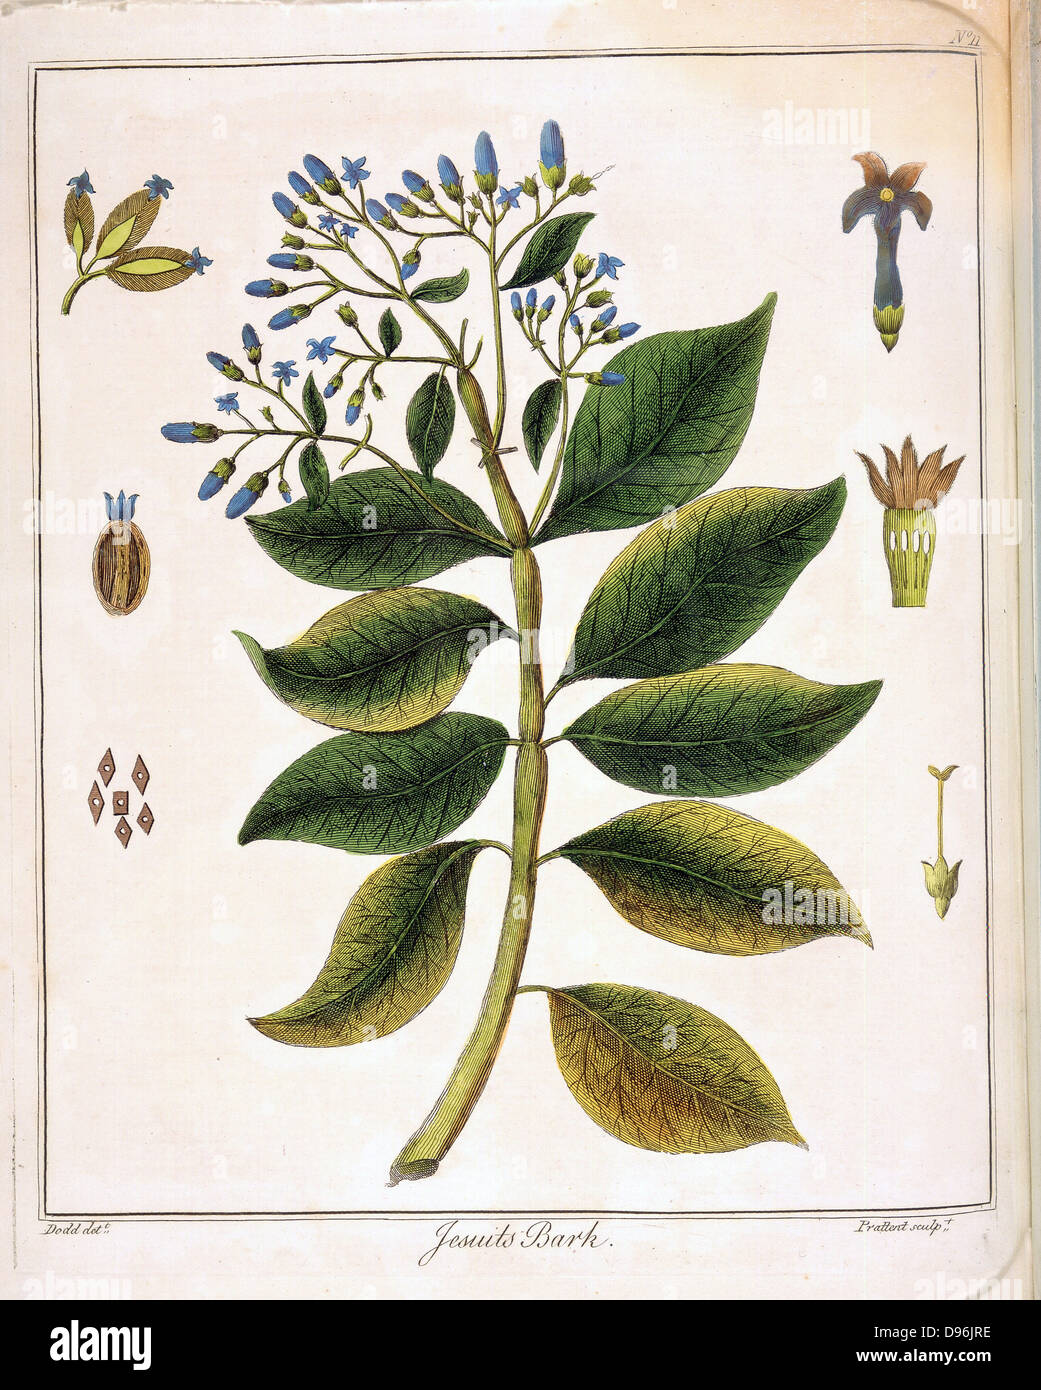 Cinchona (Jesuit's oder Peruanischen Rinde). Quelle von Chinin. Als Fiebermittel verwendet, insbesondere in der Behandlung der Malaria. Handcolorierte Kupferstich, London 1795 Stockfoto